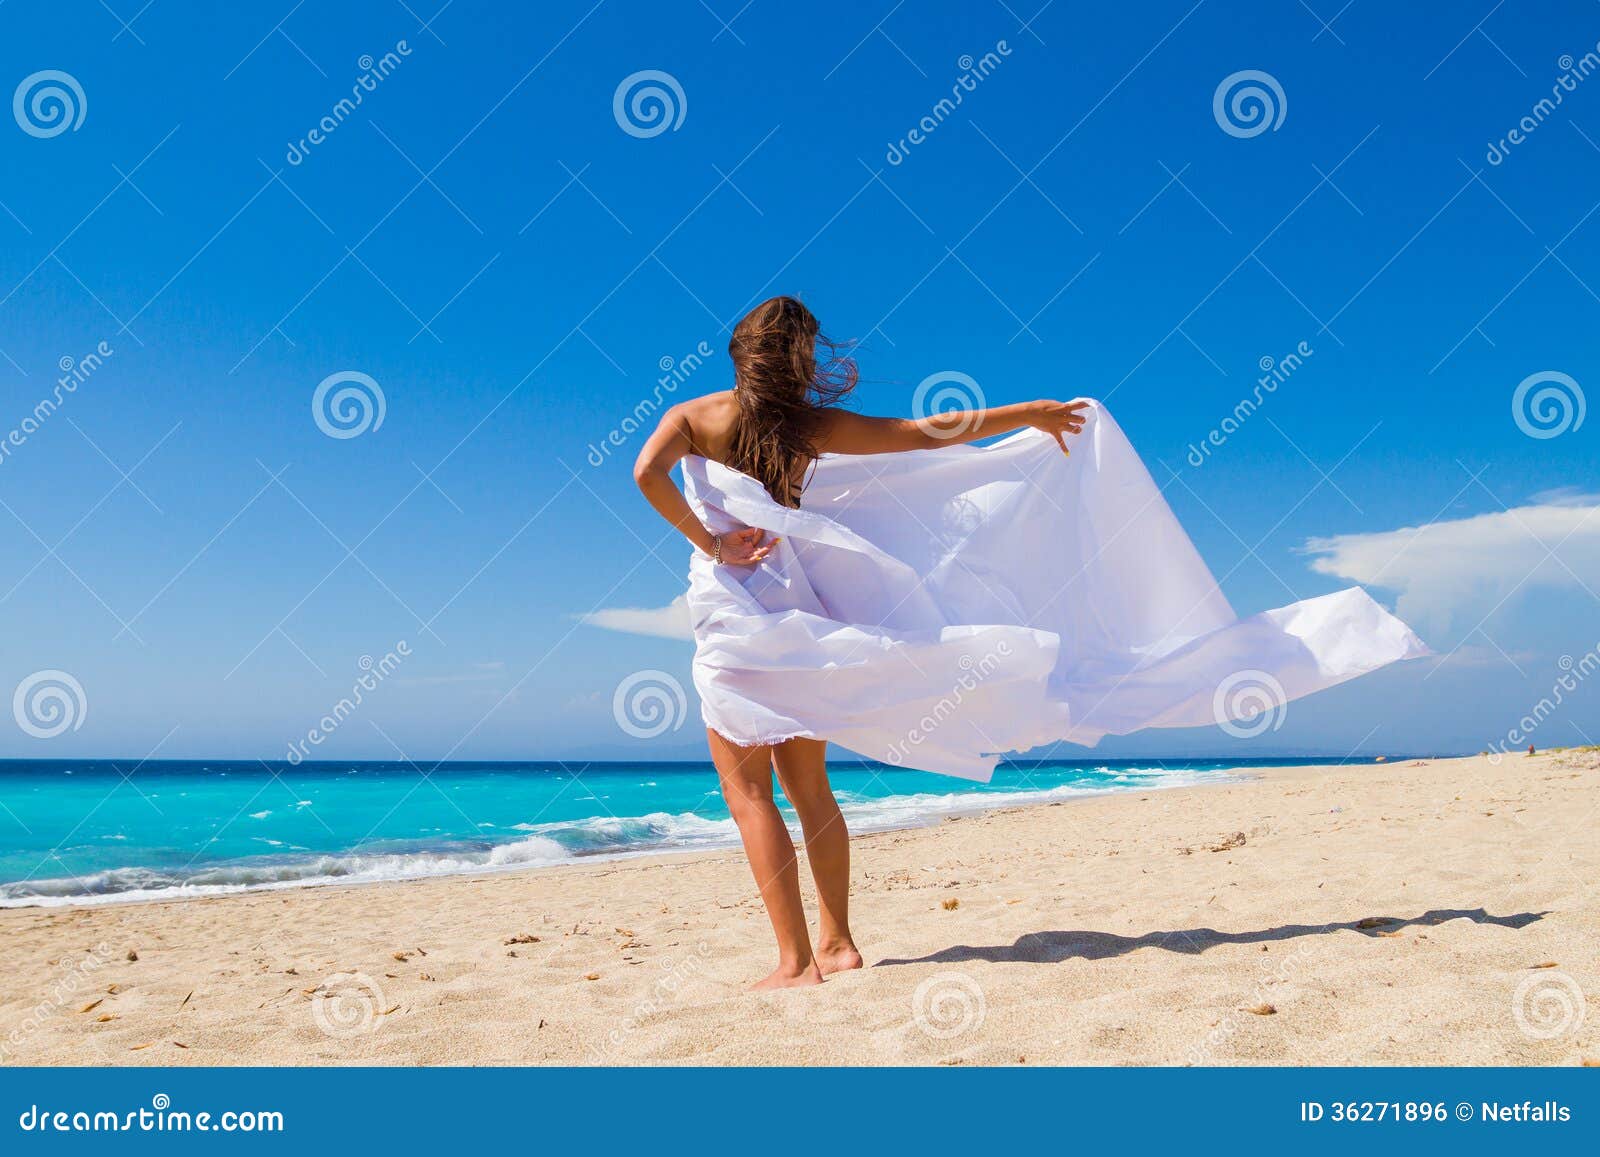 Bella ragazza con tessuto bianco sulla spiaggia. Viaggio e vacanza. Concetto di libertà.